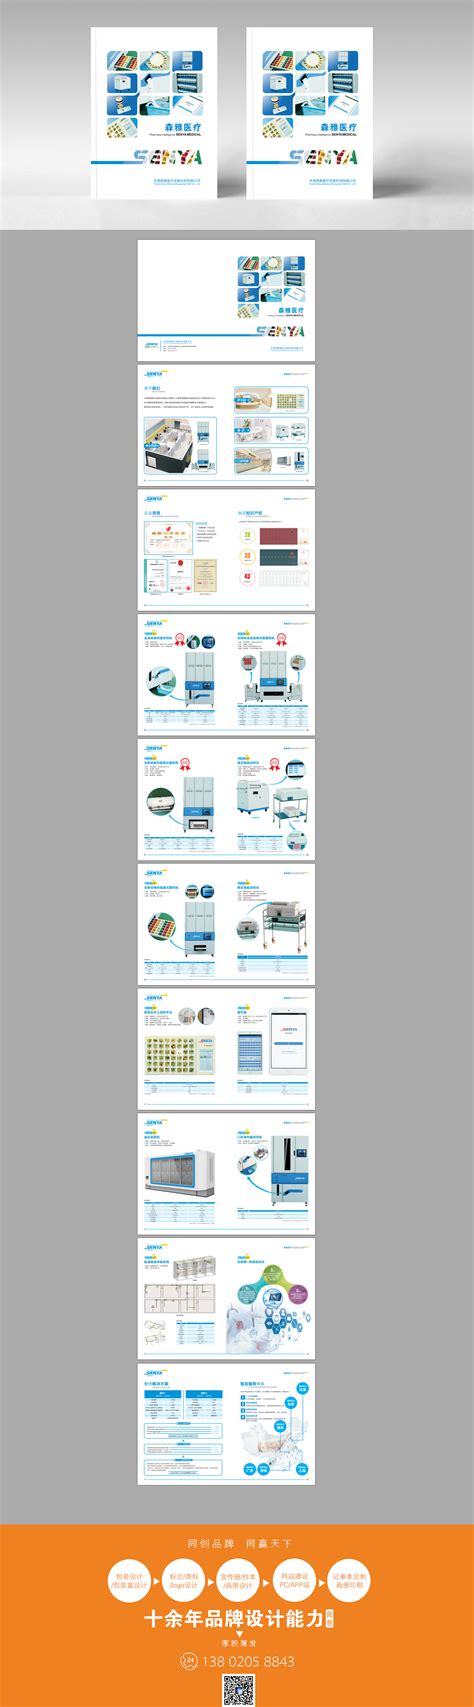 案例-天津公司宣传册设计印刷、画册设计印刷、产品样本设计公司、标志设计、包装设计、网站建设等